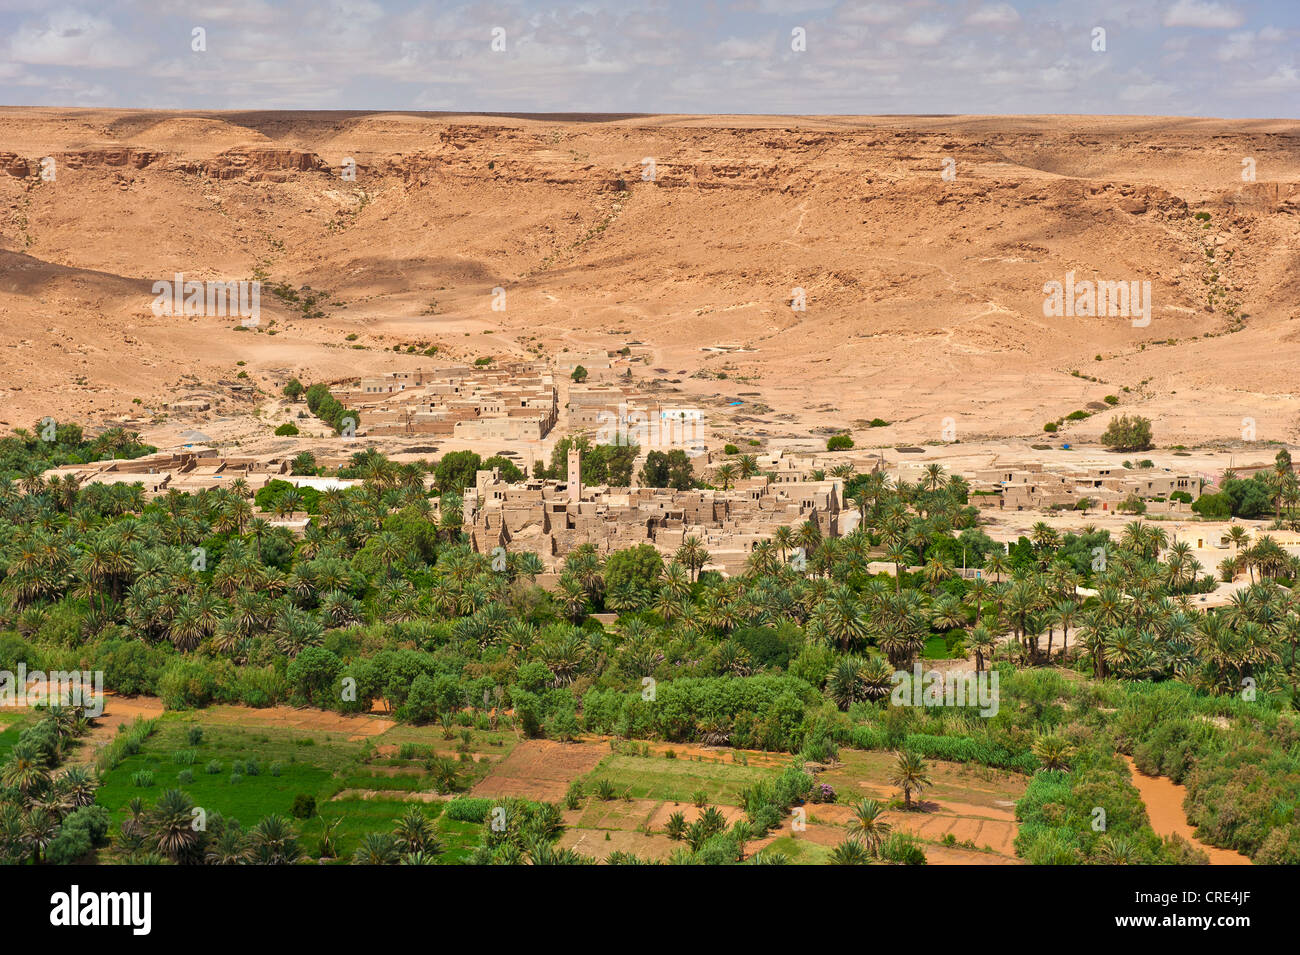 Oasi Fluviale, villaggio, palme da dattero e piccoli campi, Ziz Valley, nel sud del Marocco, Africa Foto Stock